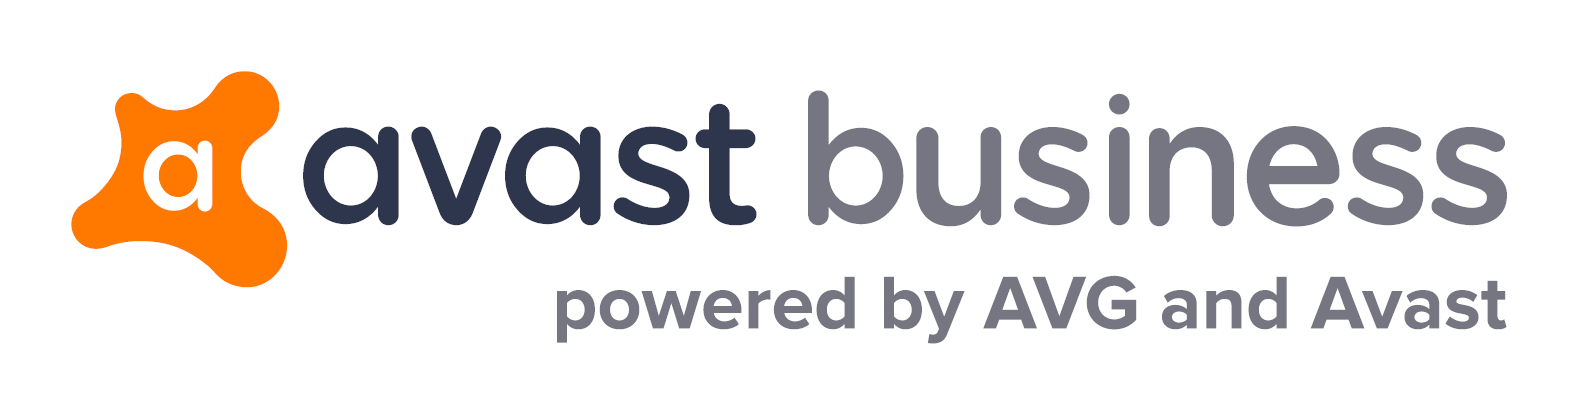 法人様向け AVG ビジネス エディション ラインナップ, Avast Business Edition powered by AVG and Avast